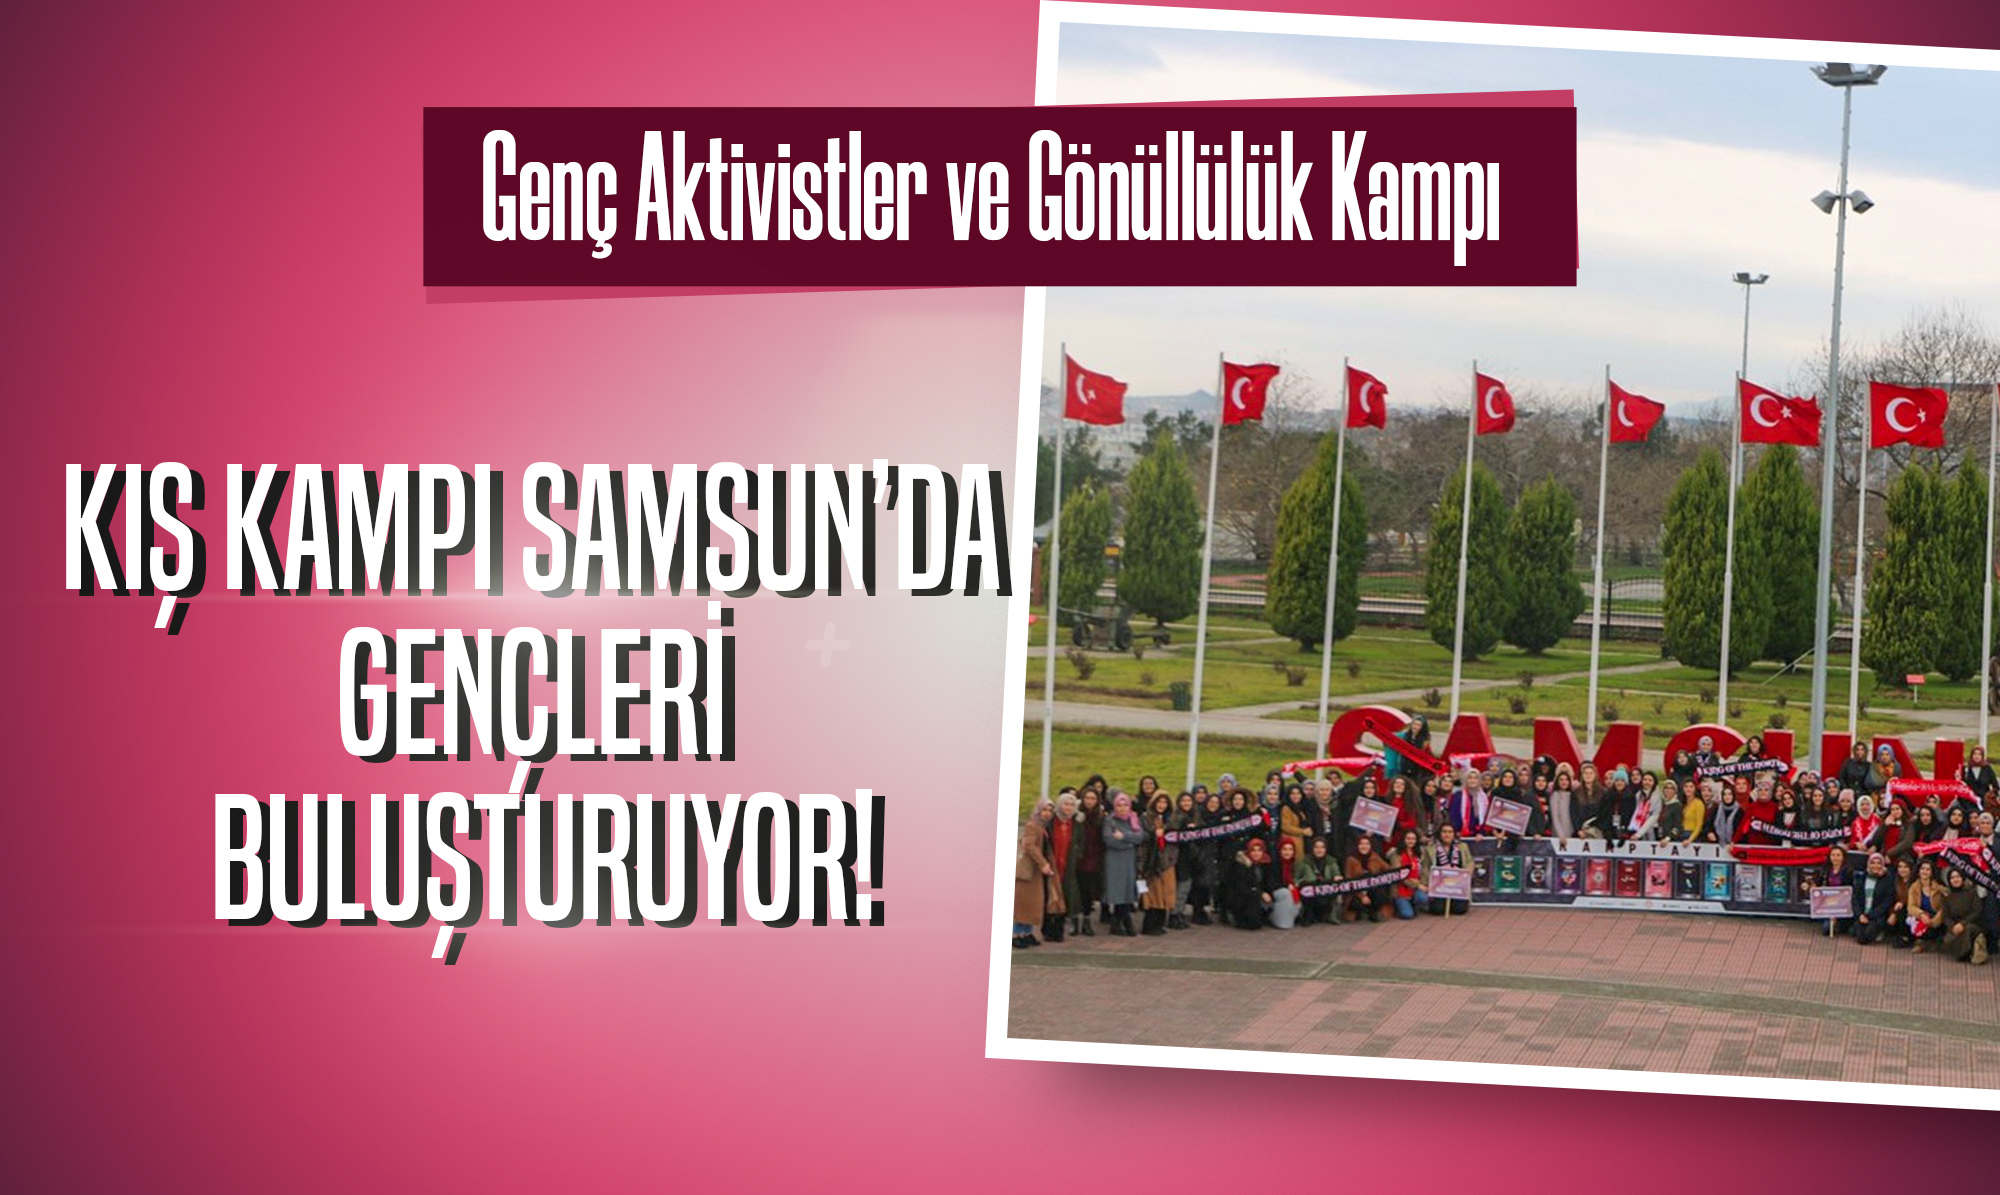 Samsun, genç aktivistler ve gönüllülük kampı ile gençleri ağırlayacak!